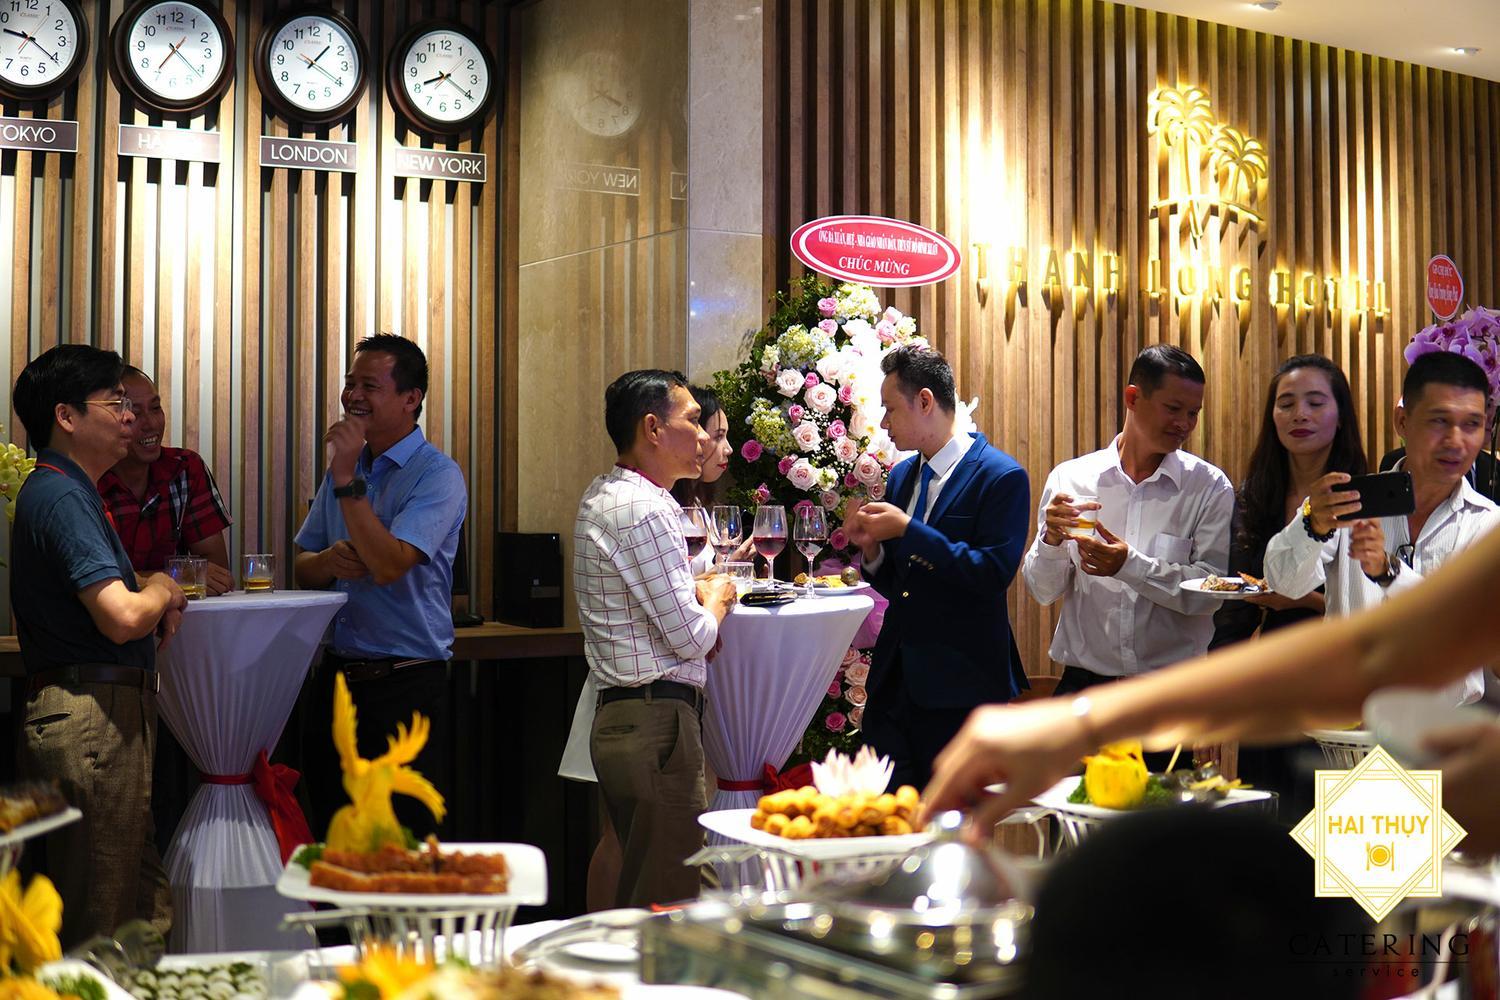 Tiệc buffet khai trương Thành Long Hotel ngày 02/09/2019 – Hai Thụy Catering